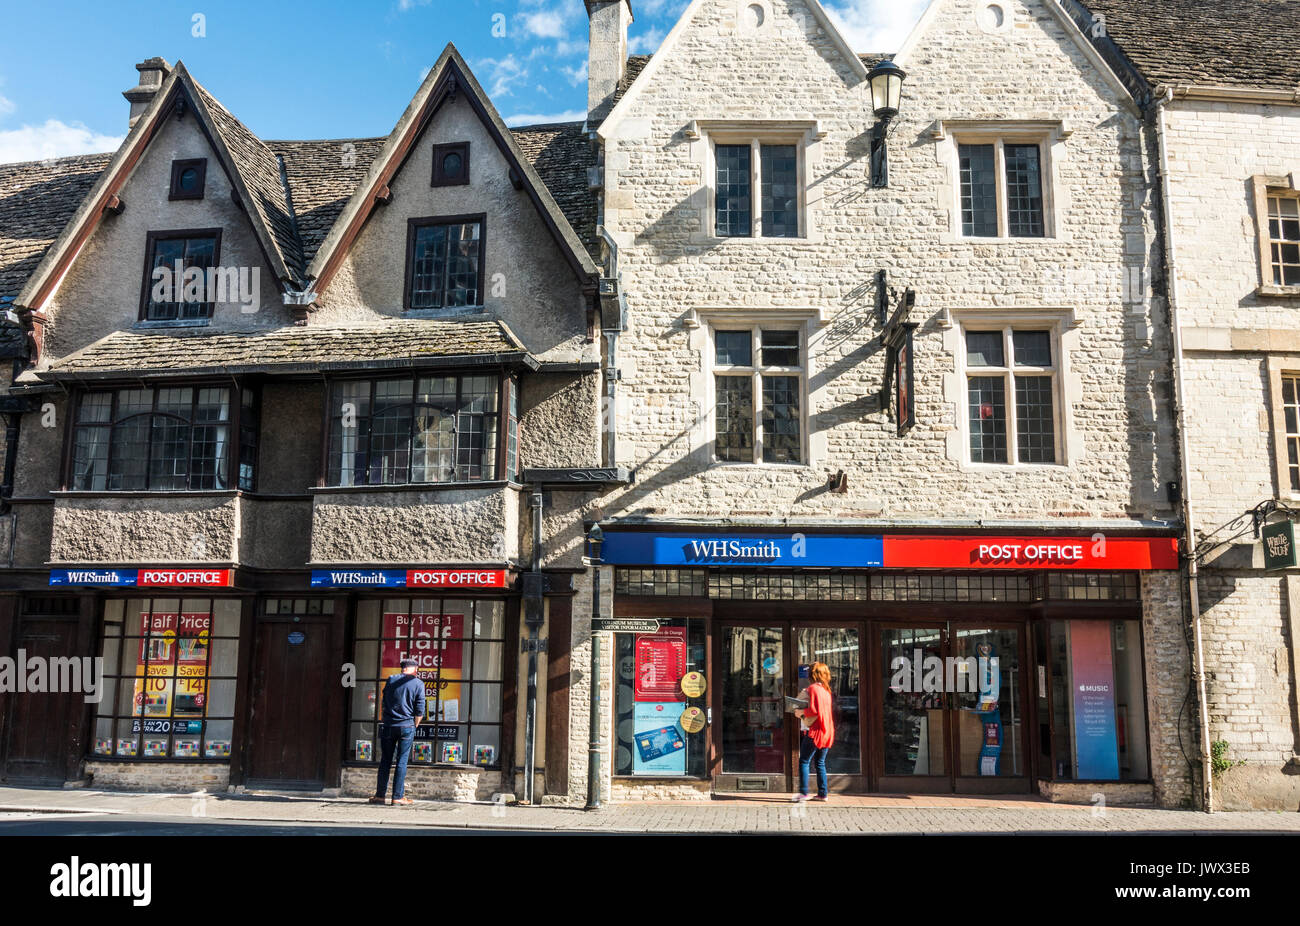 Negozio / store branch di WH Smith e Post Office in edifici del periodo, nel centro della città di Cotswolds di, Cirencester Gloucestershire, Inghilterra, Regno Unito. Foto Stock